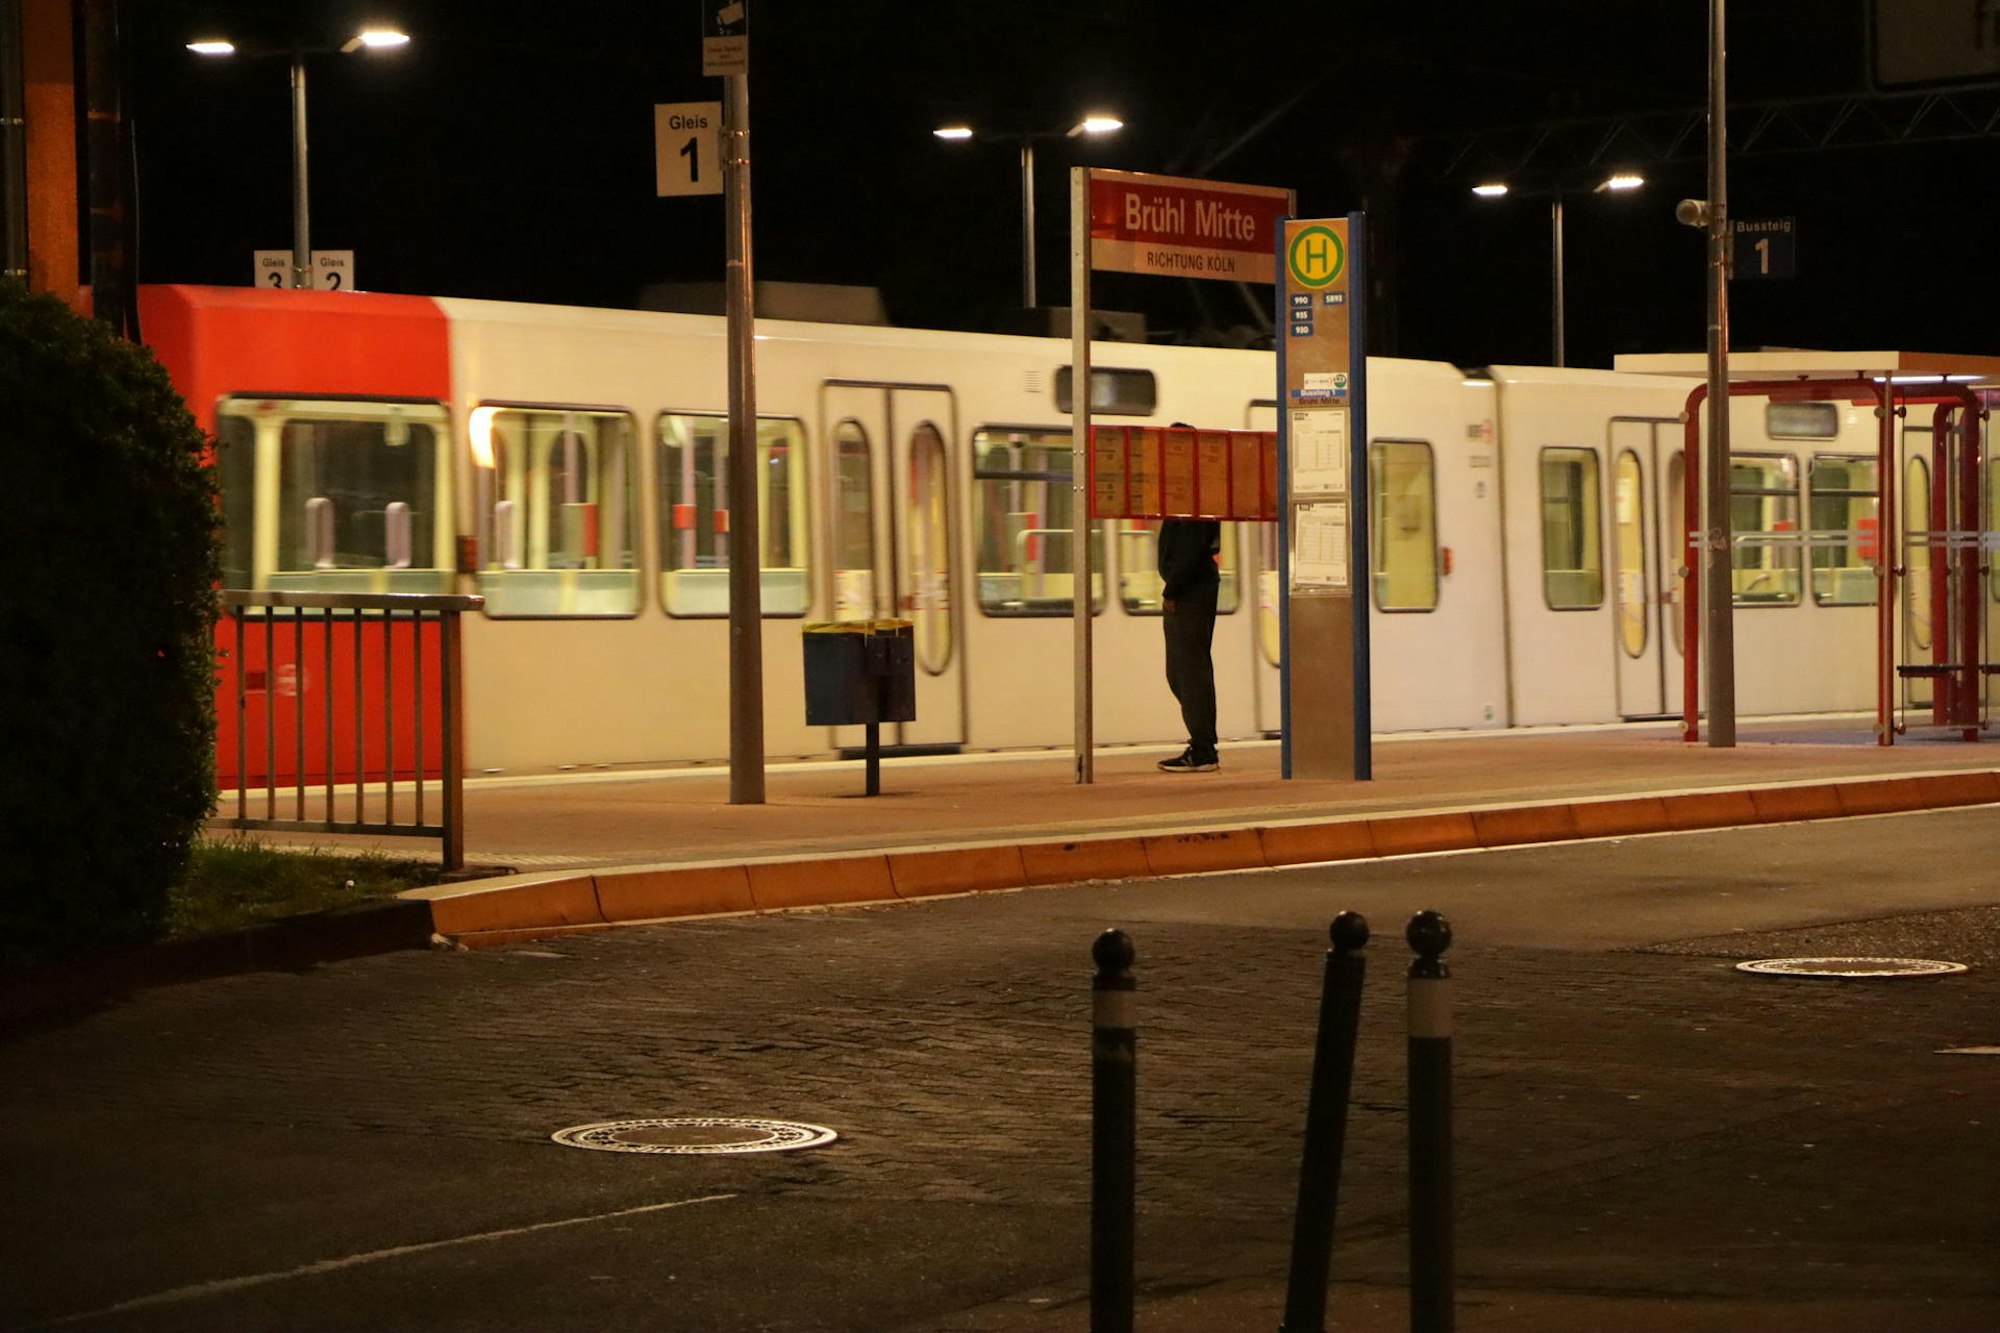 An der Bahnhaltestelle Brühl Mitte ist am Sonntag, kurz nach Mitternacht, nicht viel los. Die Linie 18 ist leer, nur eine Person steht am Bahnsteig.